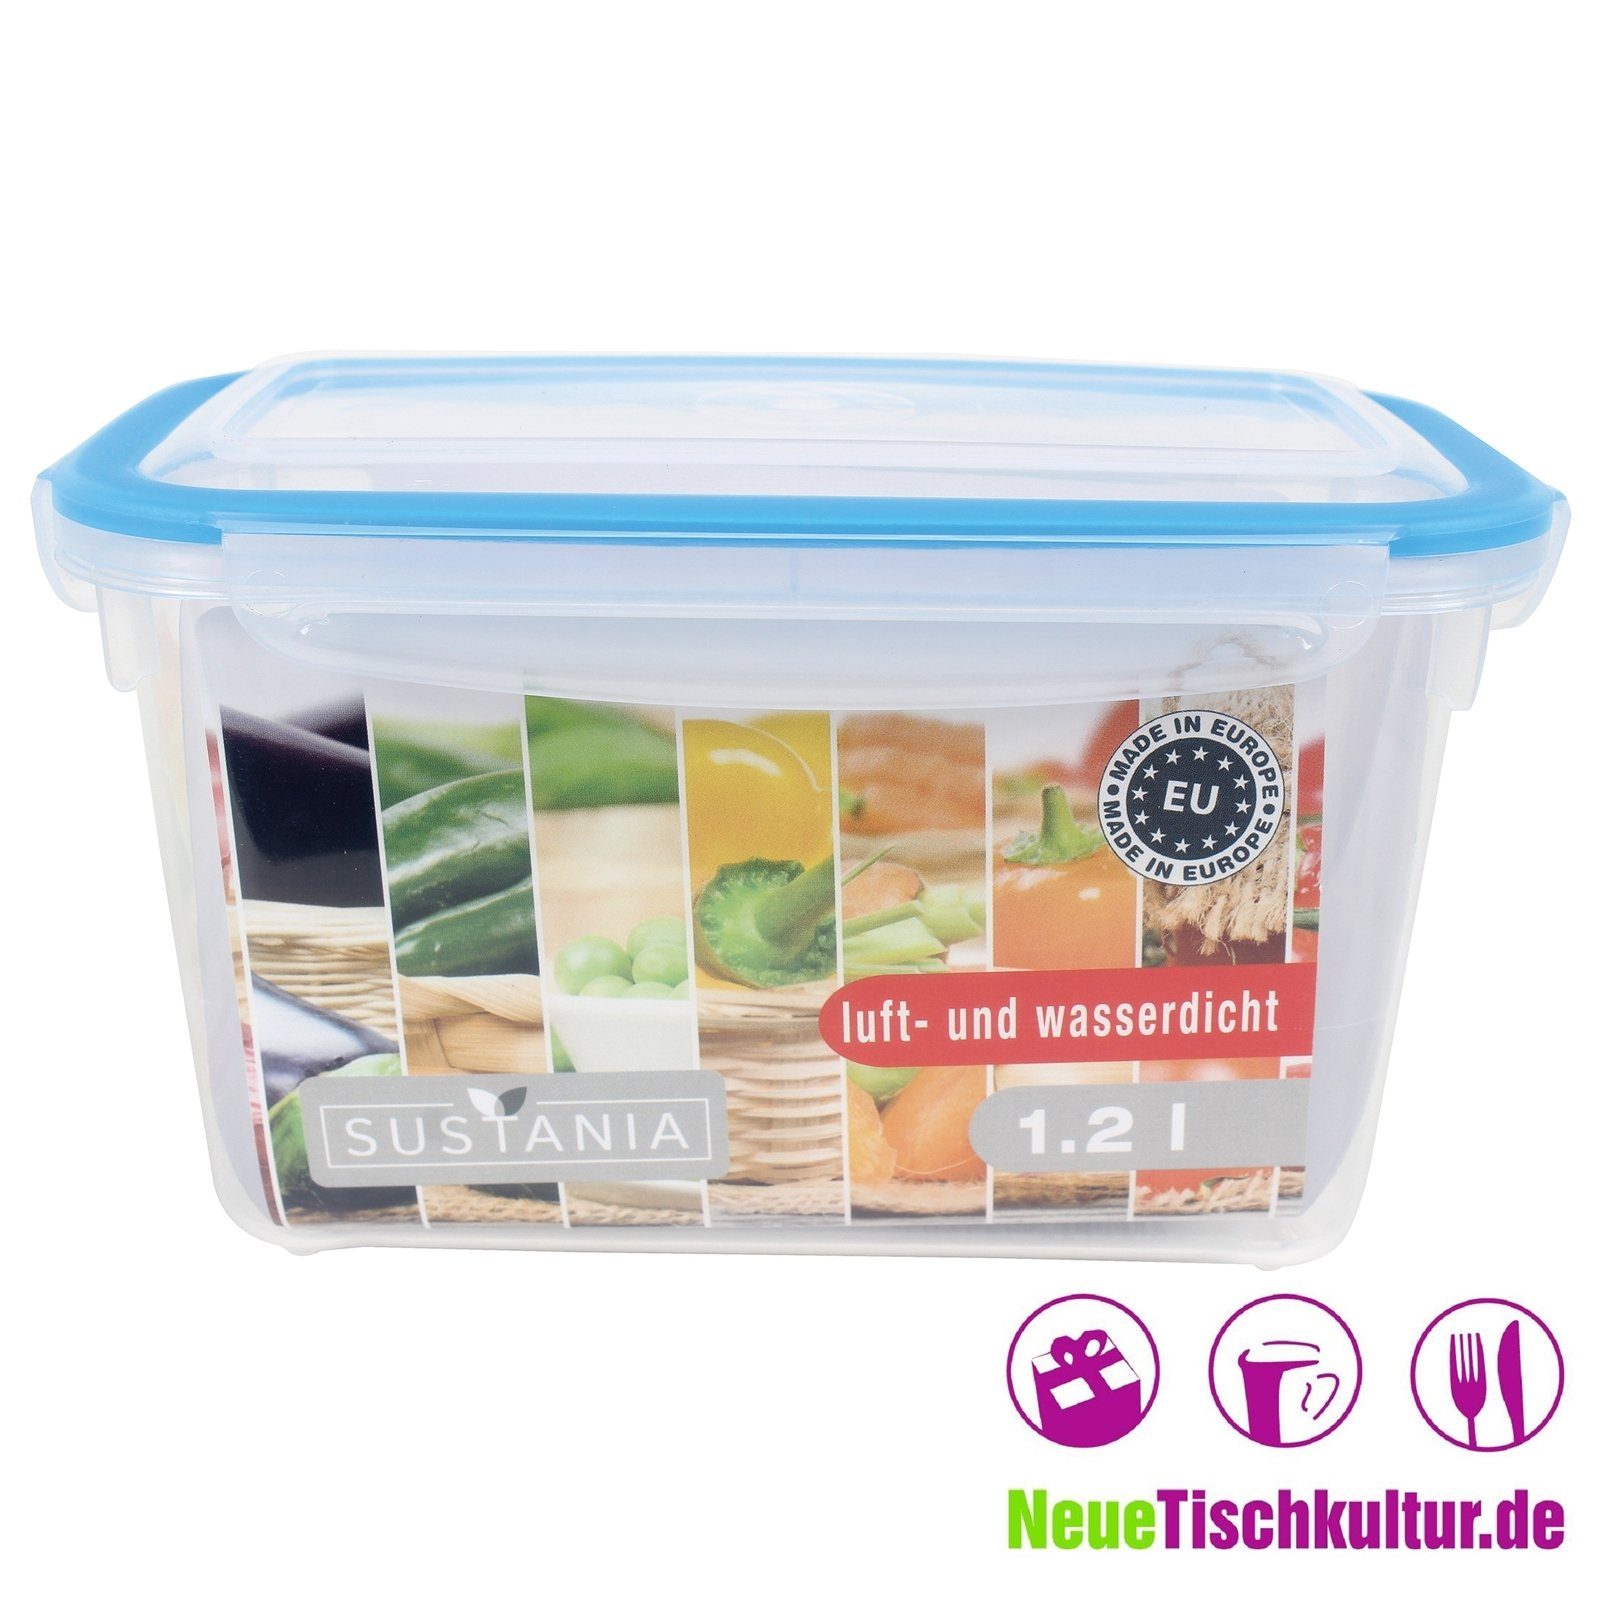 Frischhaltedose 1,2 Frischhaltedose Kunststoff Neuetischkultur Sustania,